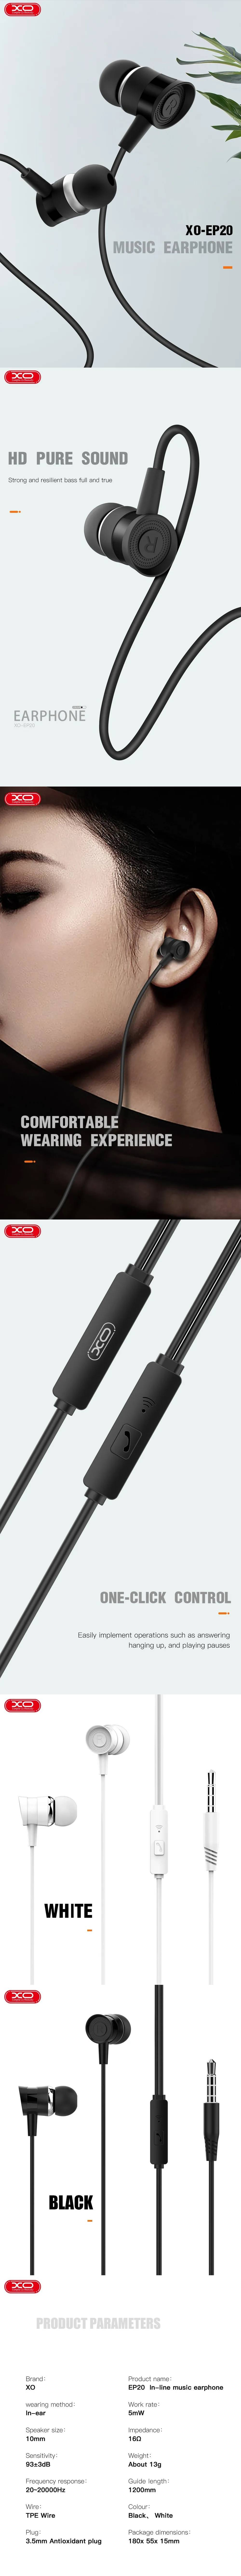 XO wired earphones EP20 jack 3,5mm black